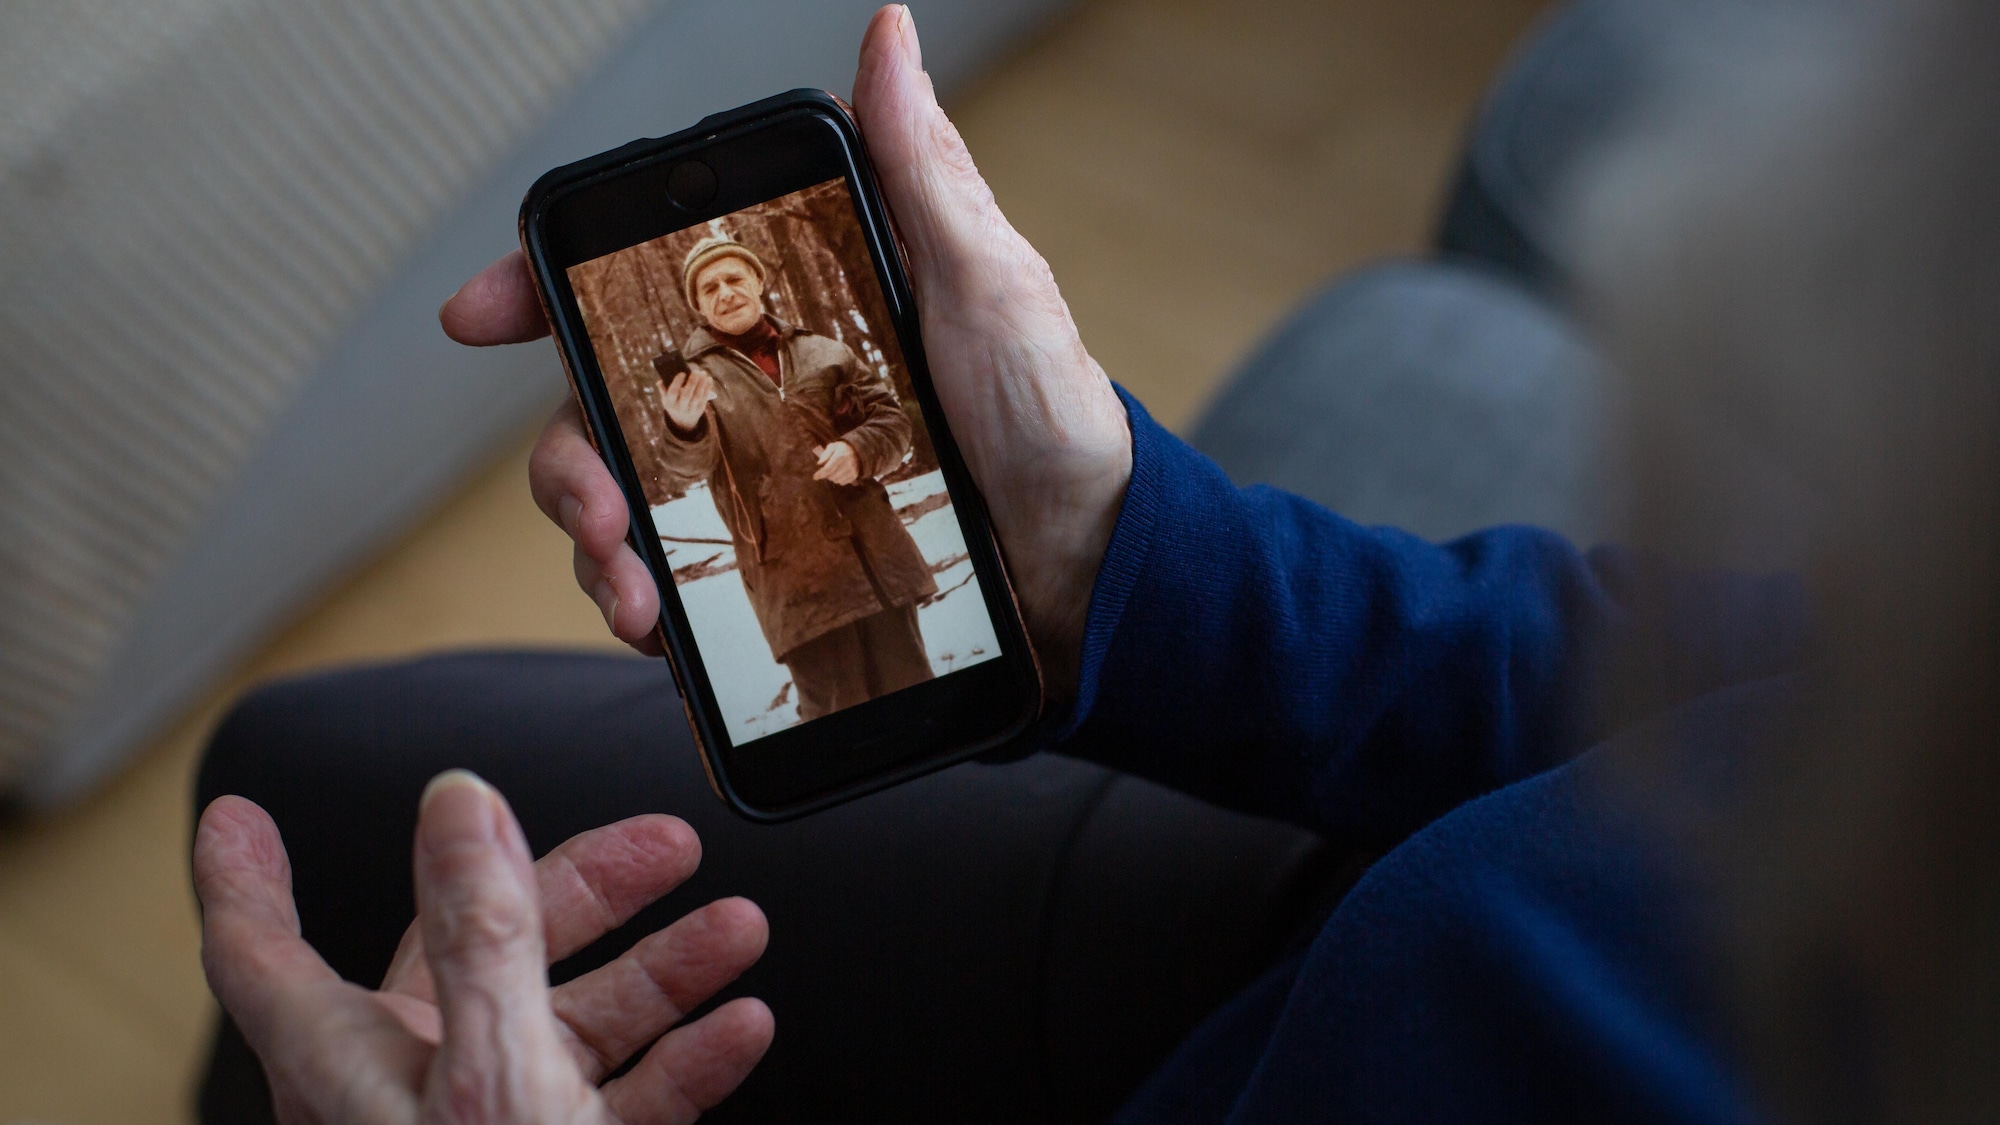 Une photo du père de Micheline Lanctôt apparaît sur un téléphone cellulaire, qu'elle tient dans une main.